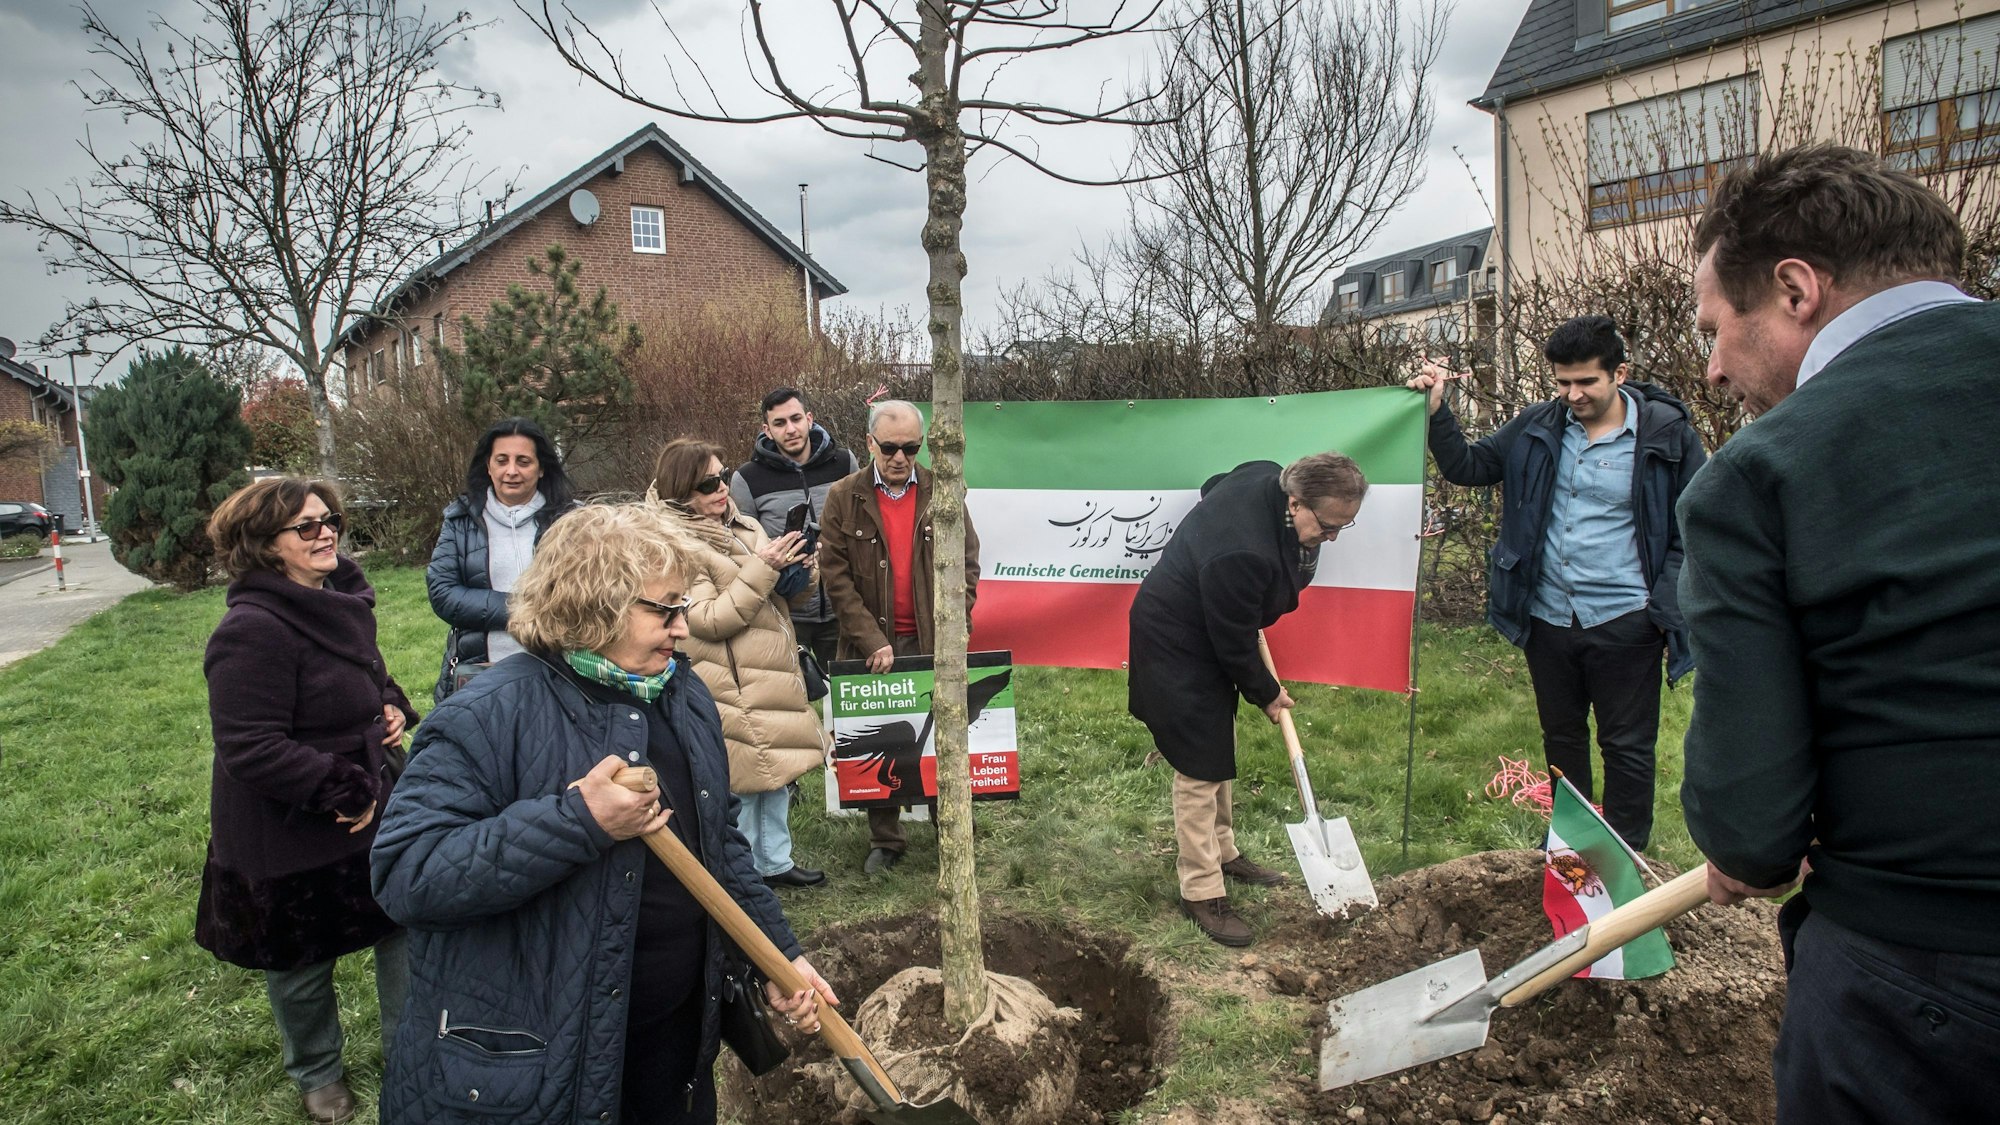 Die iranische Gemeinschaft  Leverkusen pflanzt einen Baum mit Oberbürgermeister Uwe Richrath  Grünzug Schmalenbruch, Theodor-Gierath-Straße.